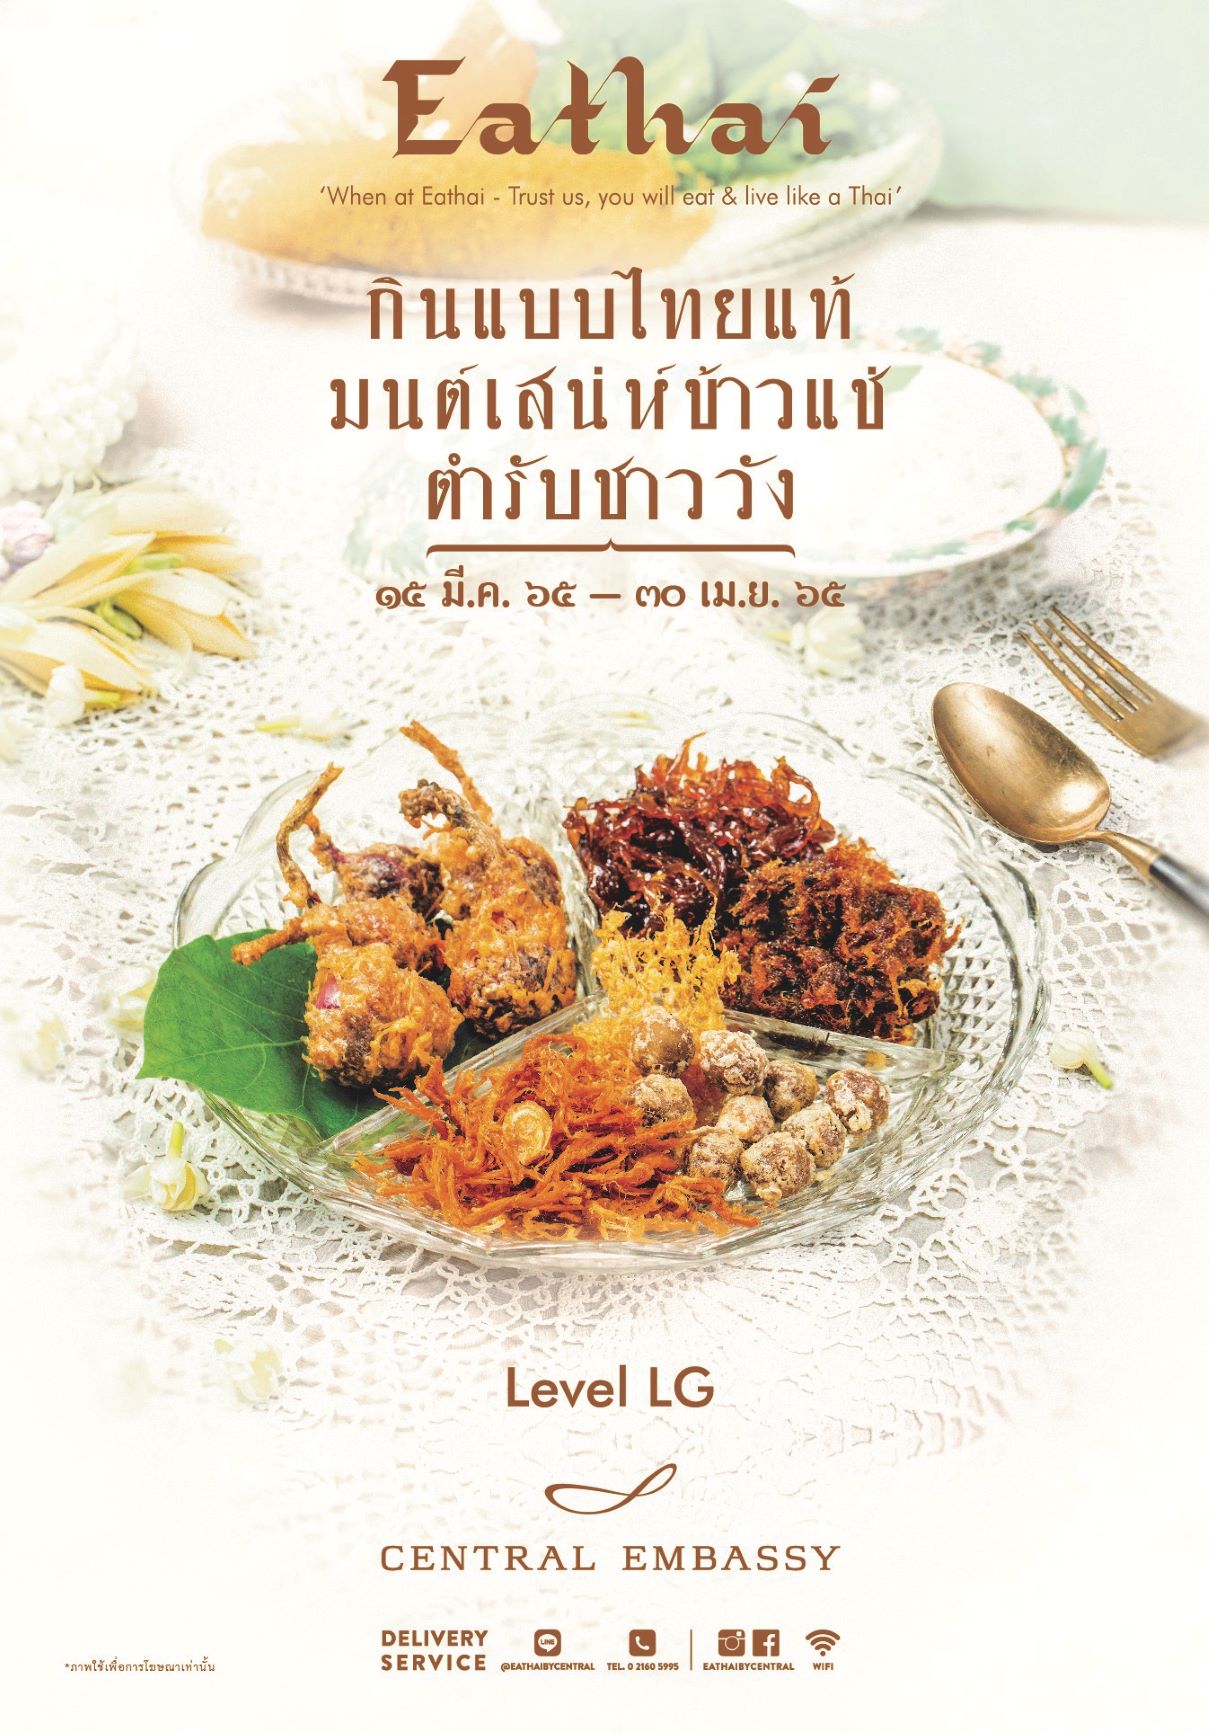 ตามรอยตำรับชาววัง มนต์เสน่ห์ข้าวแช่  กับเทศกาลข้าวแช่ที่อีทไทยปี 2565